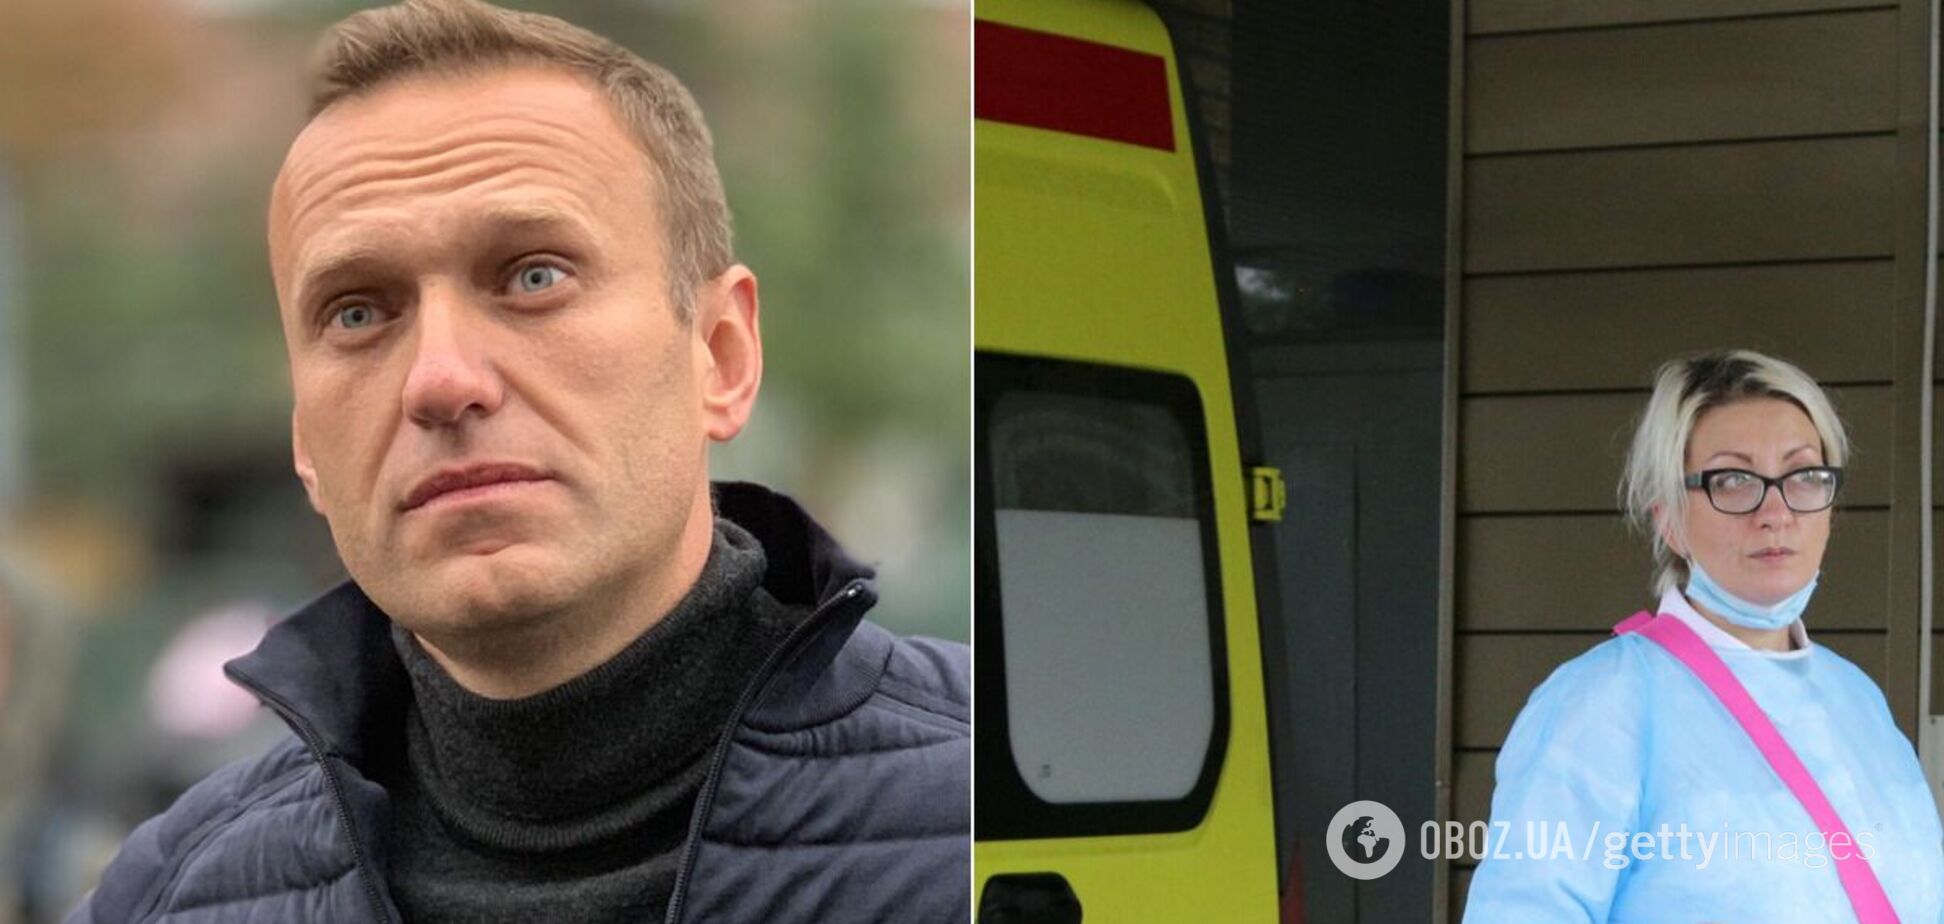 Медики предварительно назвали вещество, которое отравило Навального